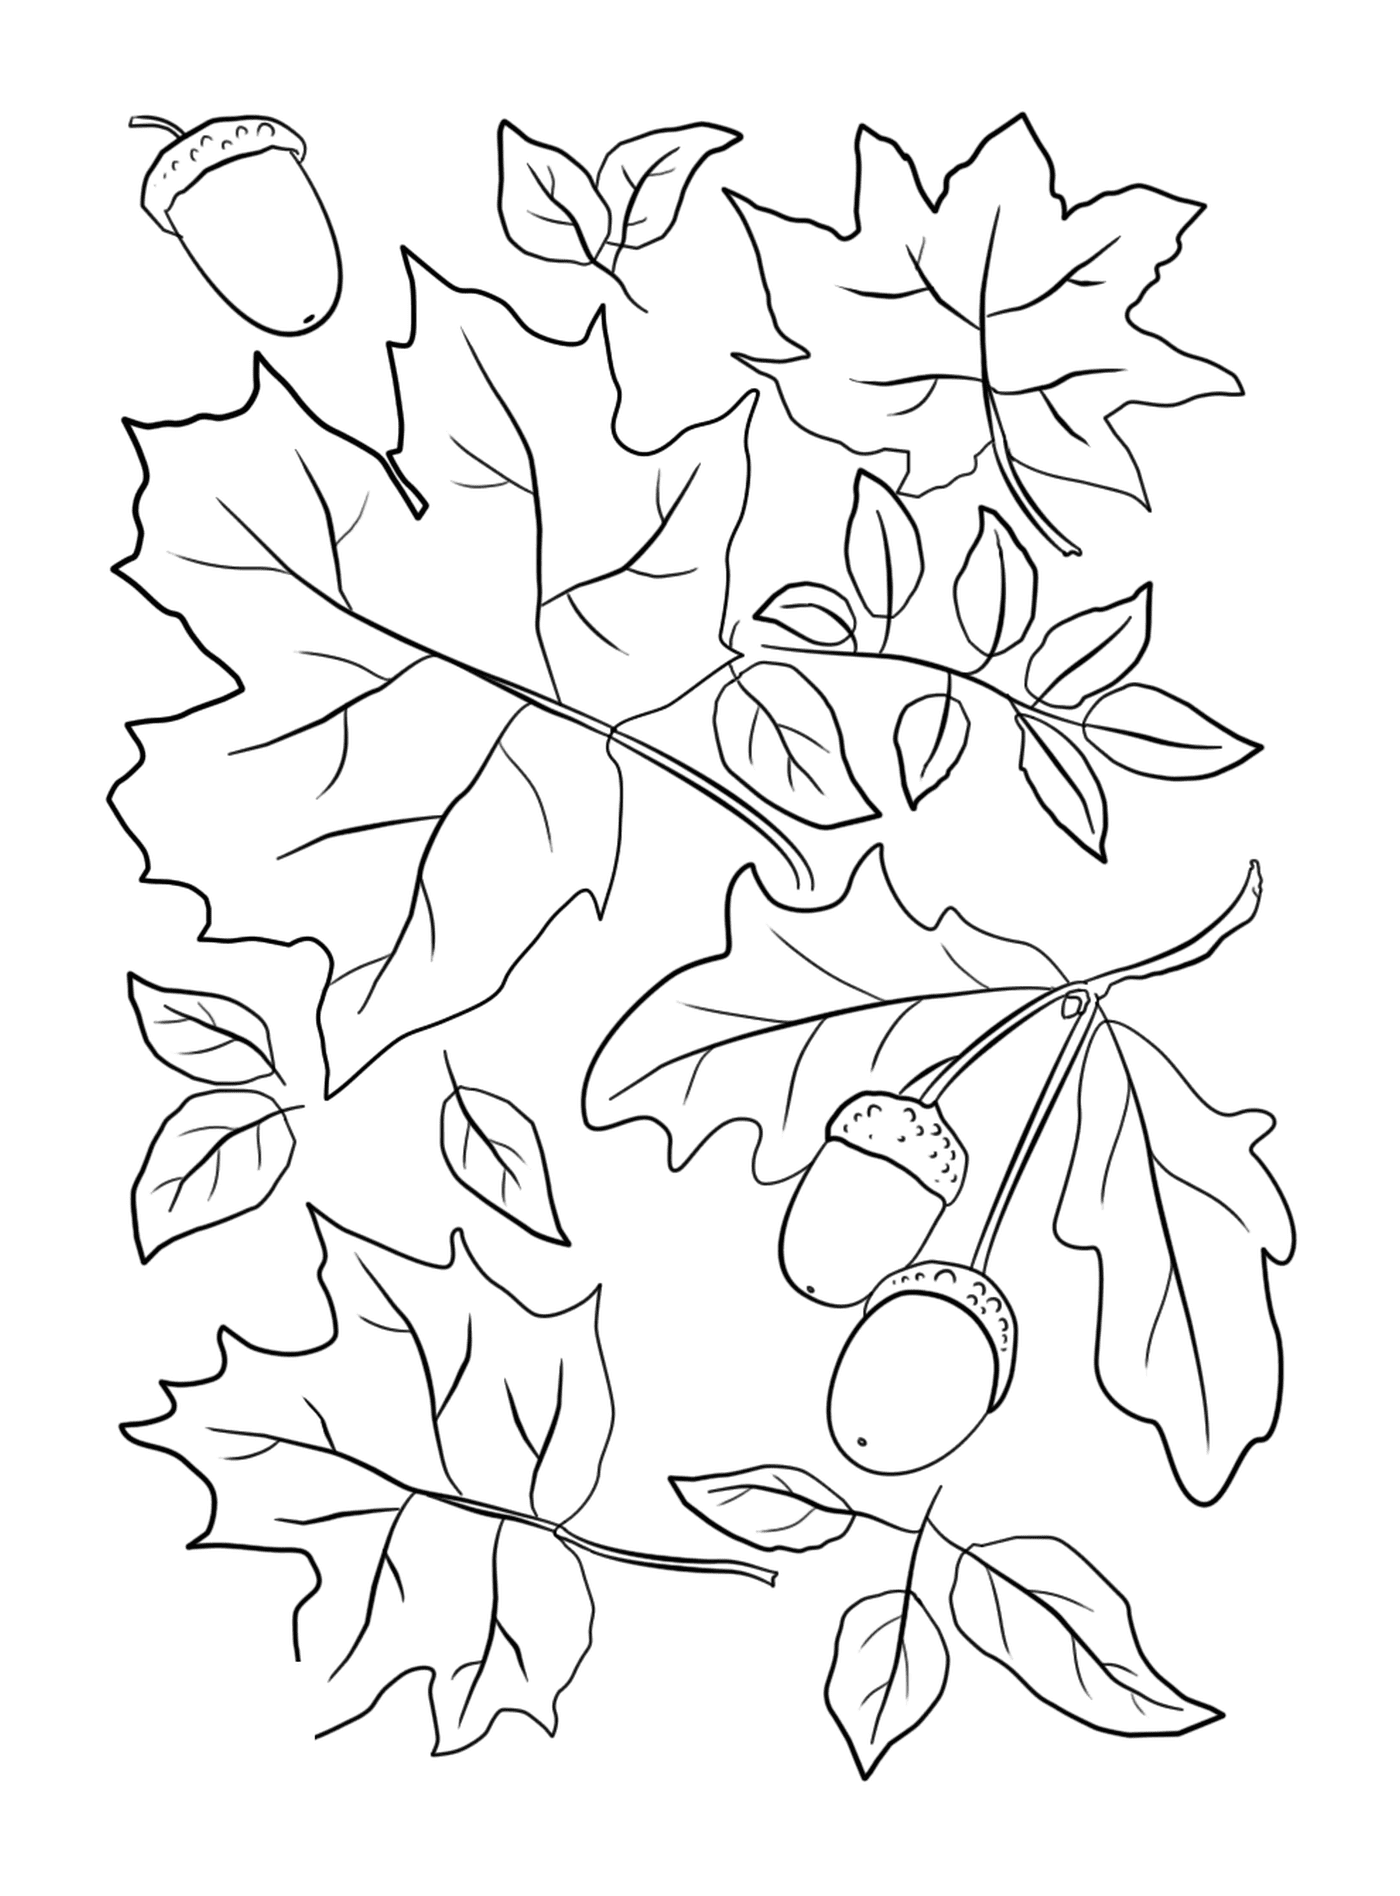  Blätter und Eicheln auf einem Baum 